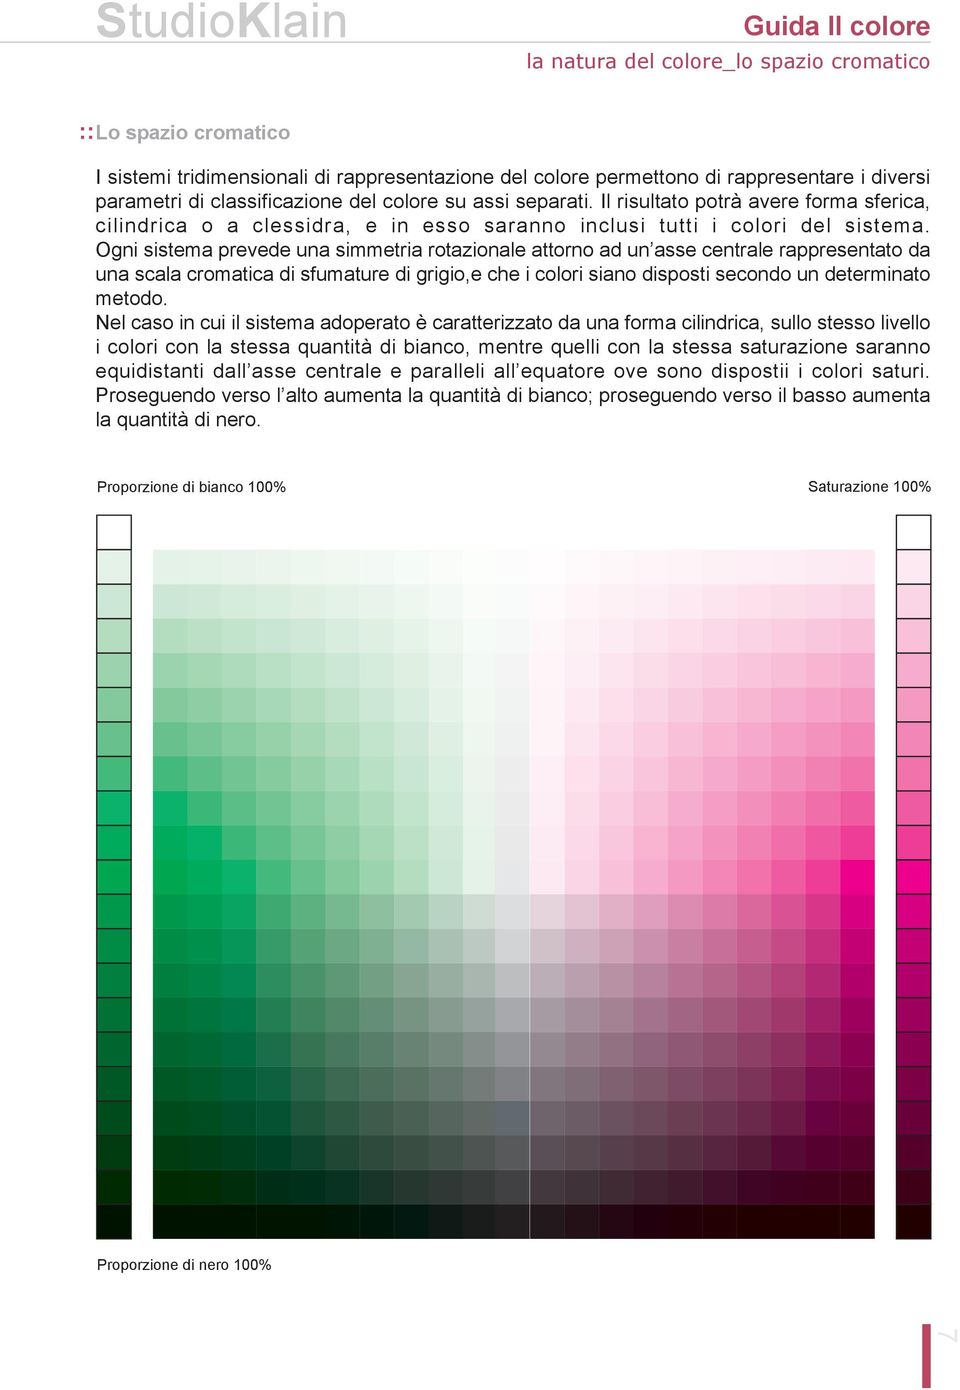 Ogni sistema prevede una simmetria rotazionale attorno ad un asse centrale rappresentato da una scala cromatica di sfumature di grigio,e che i colori siano disposti secondo un determinato metodo.